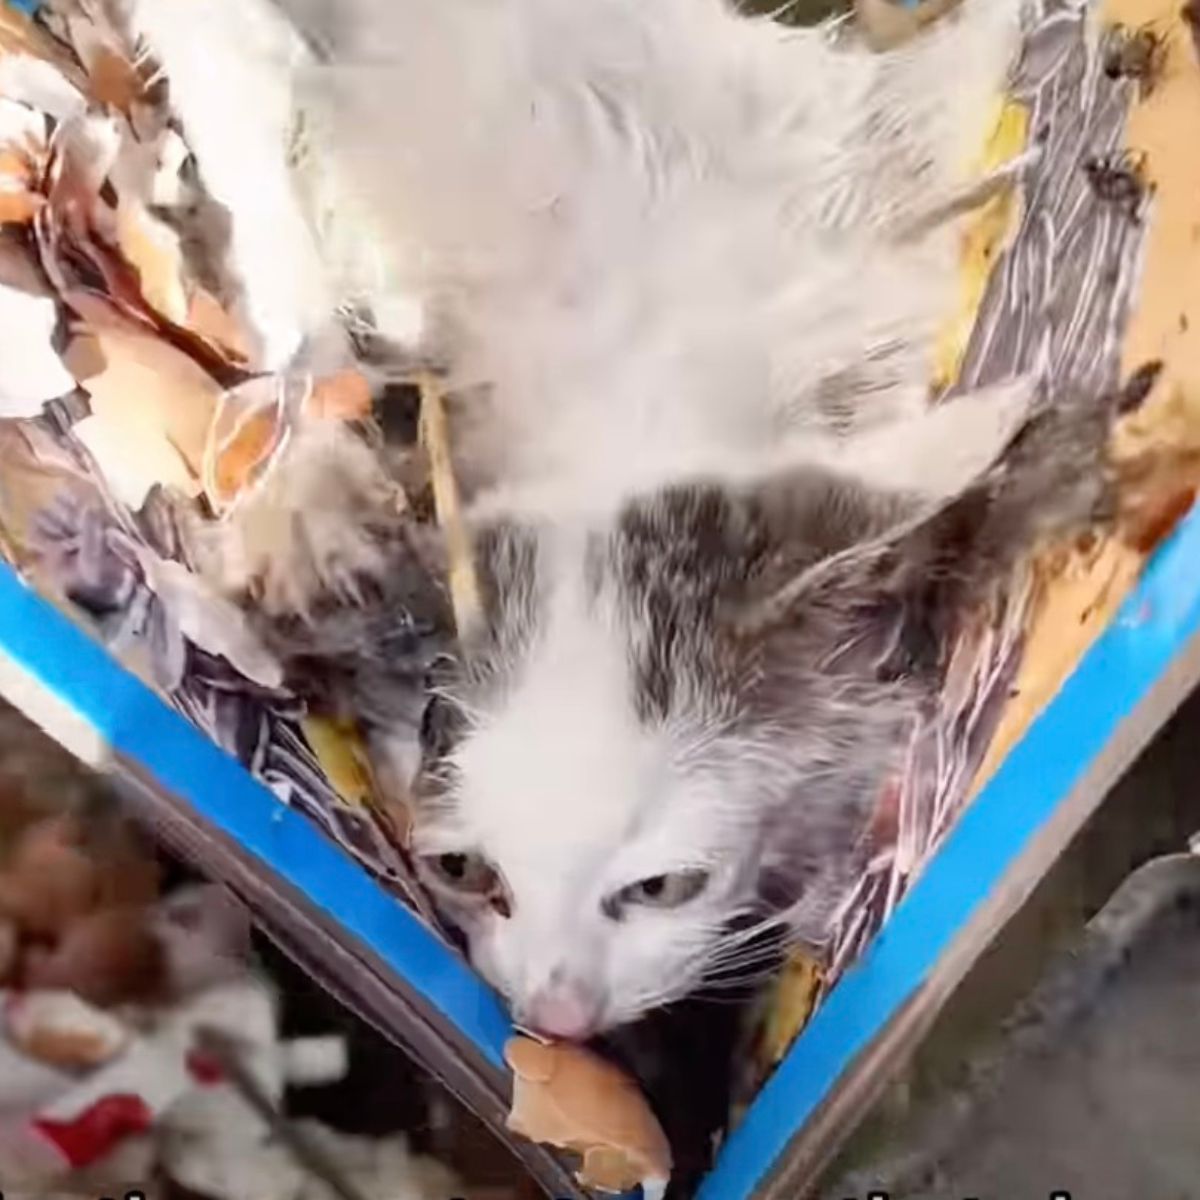 white cat in a trash